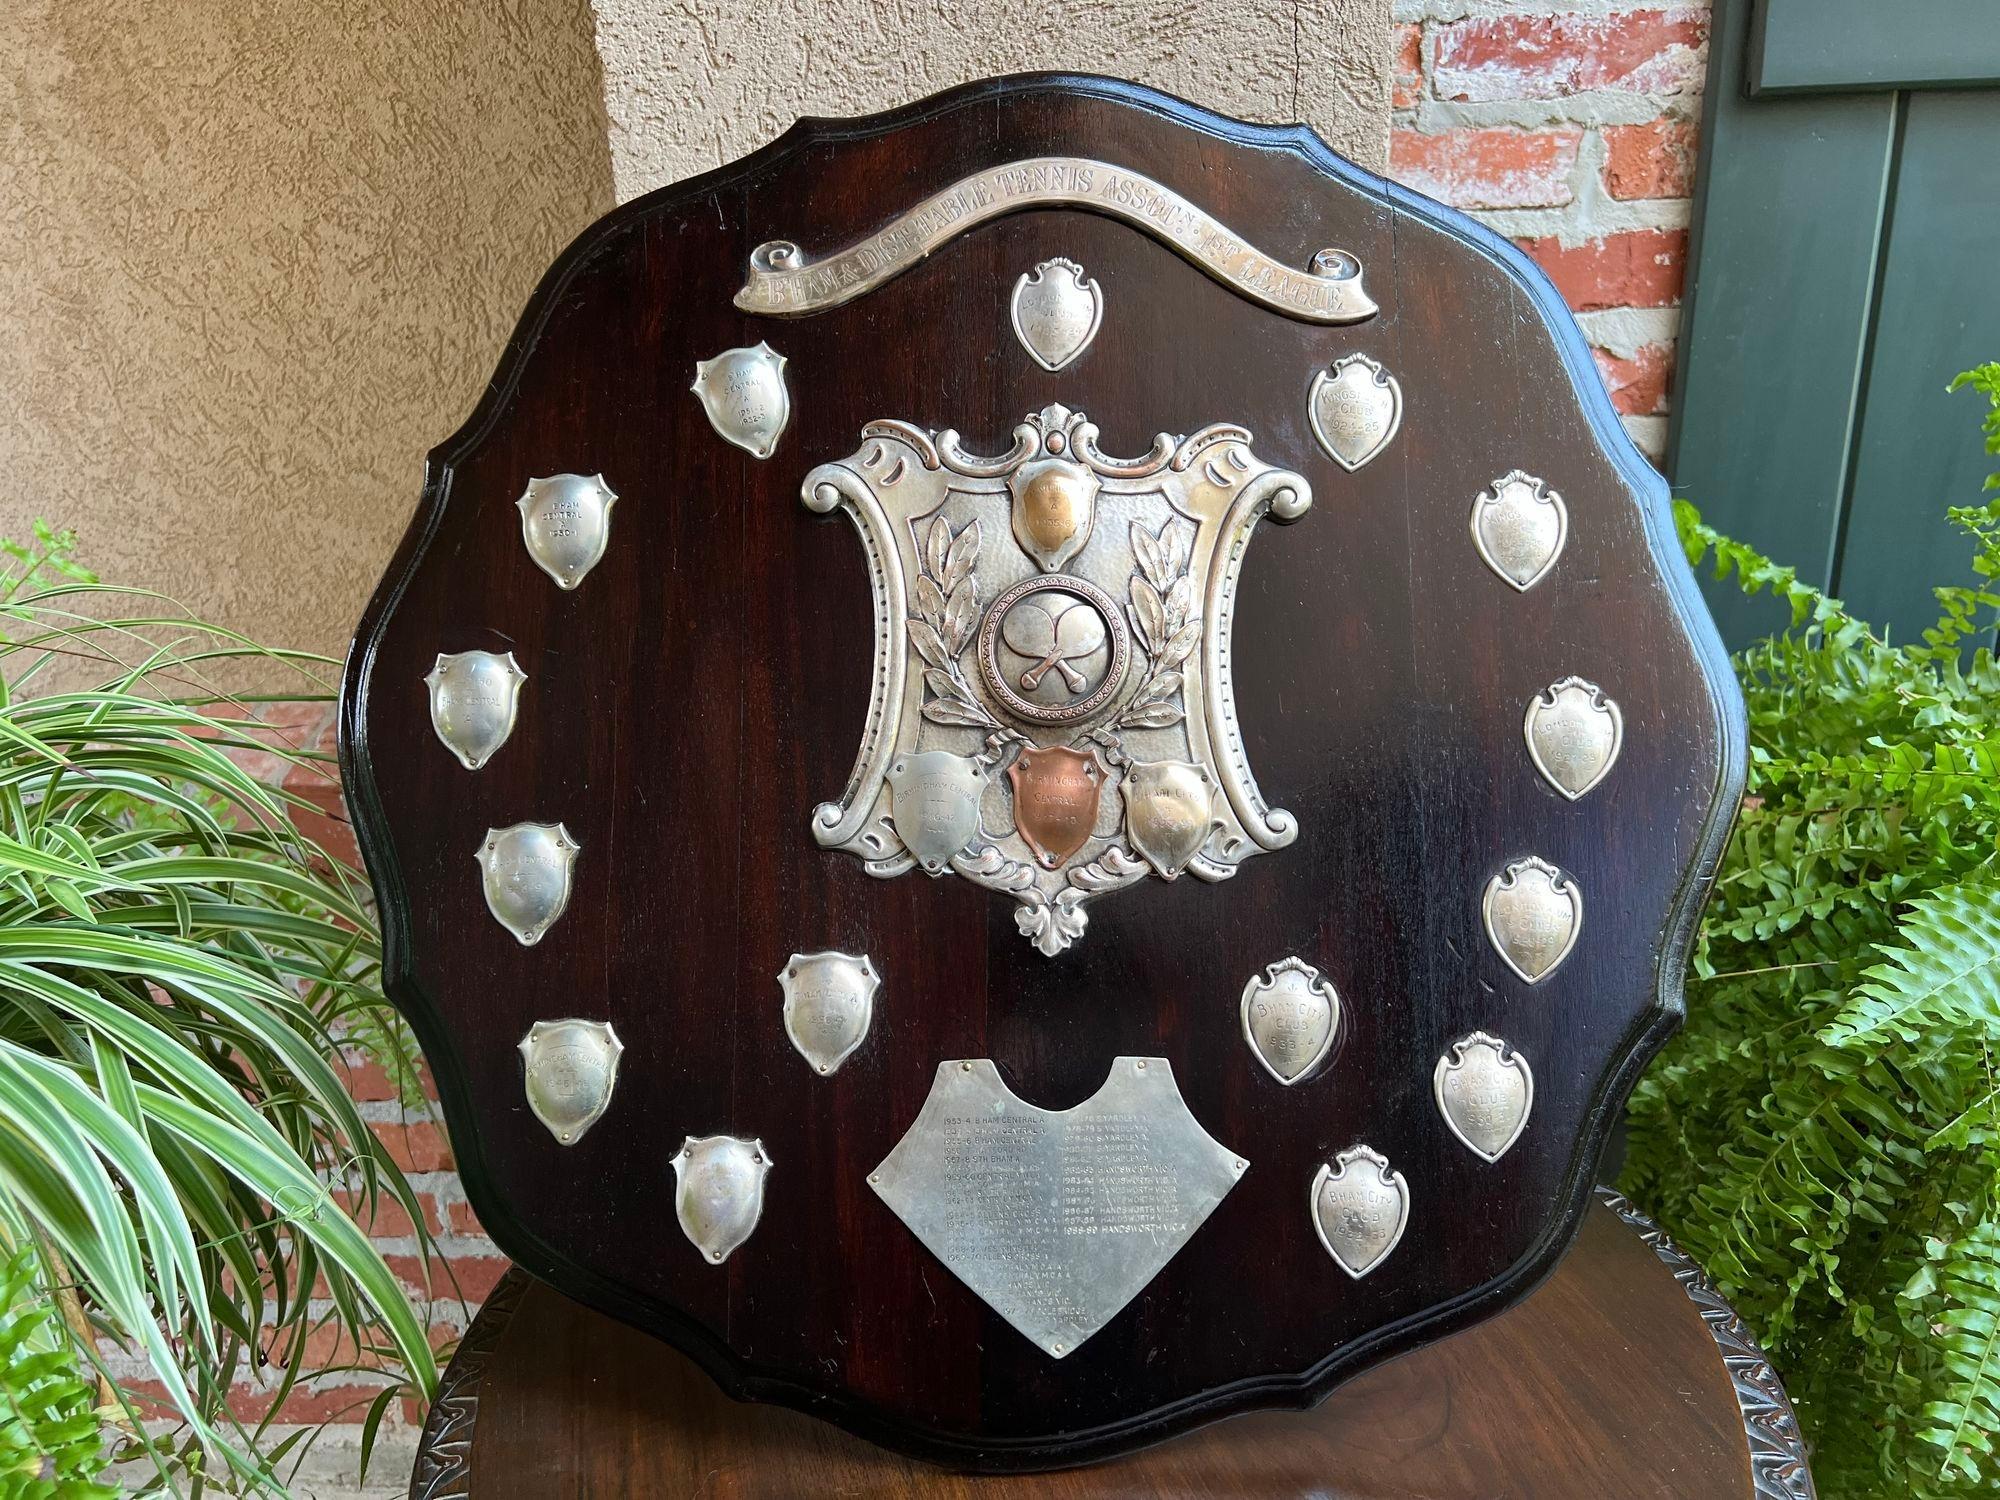 Trophée de tennis de table anglais ancien Plaque c1939 Bouclier en métal argenté.

En provenance directe d'Angleterre, nous disposons de plusieurs de ces trophées anglais uniques en leur genre qui regorgent de provenance, et oh 